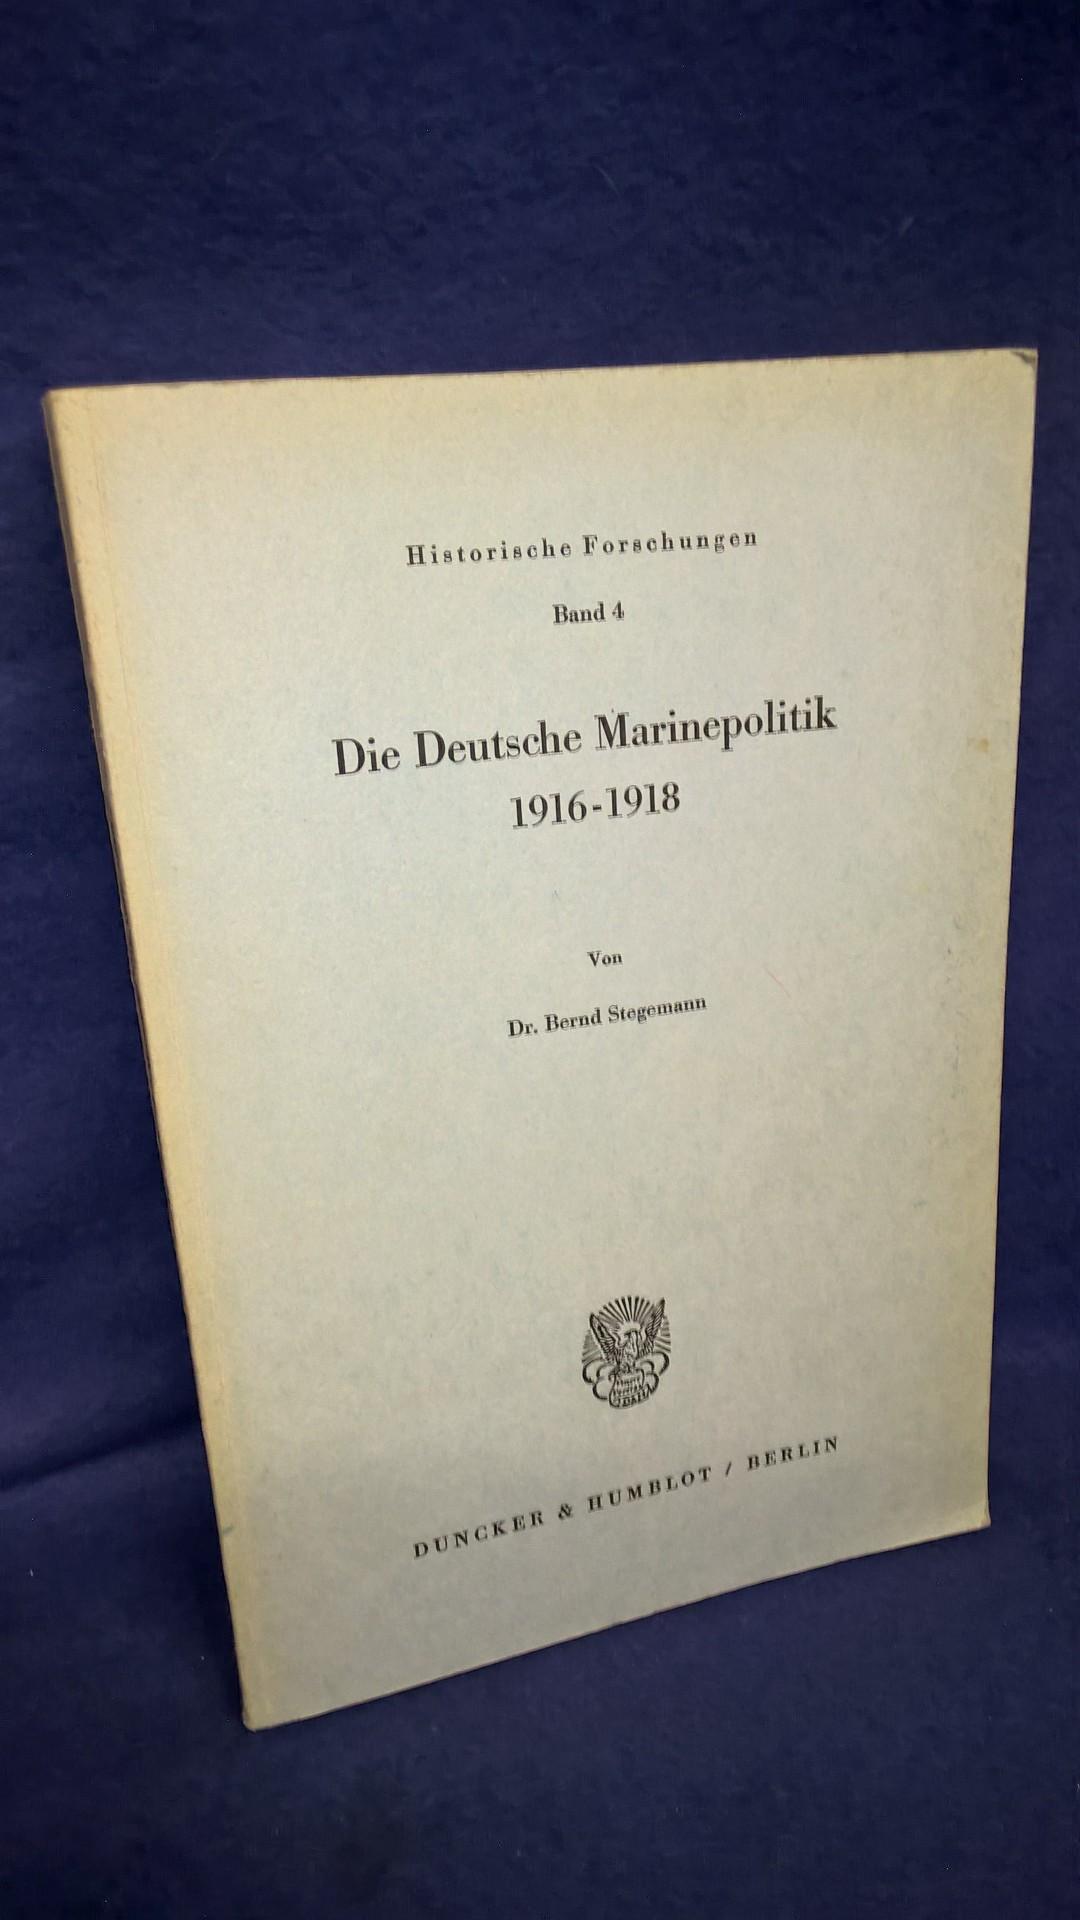 Die Deutsche Marinepolitik 1916 - 1918.